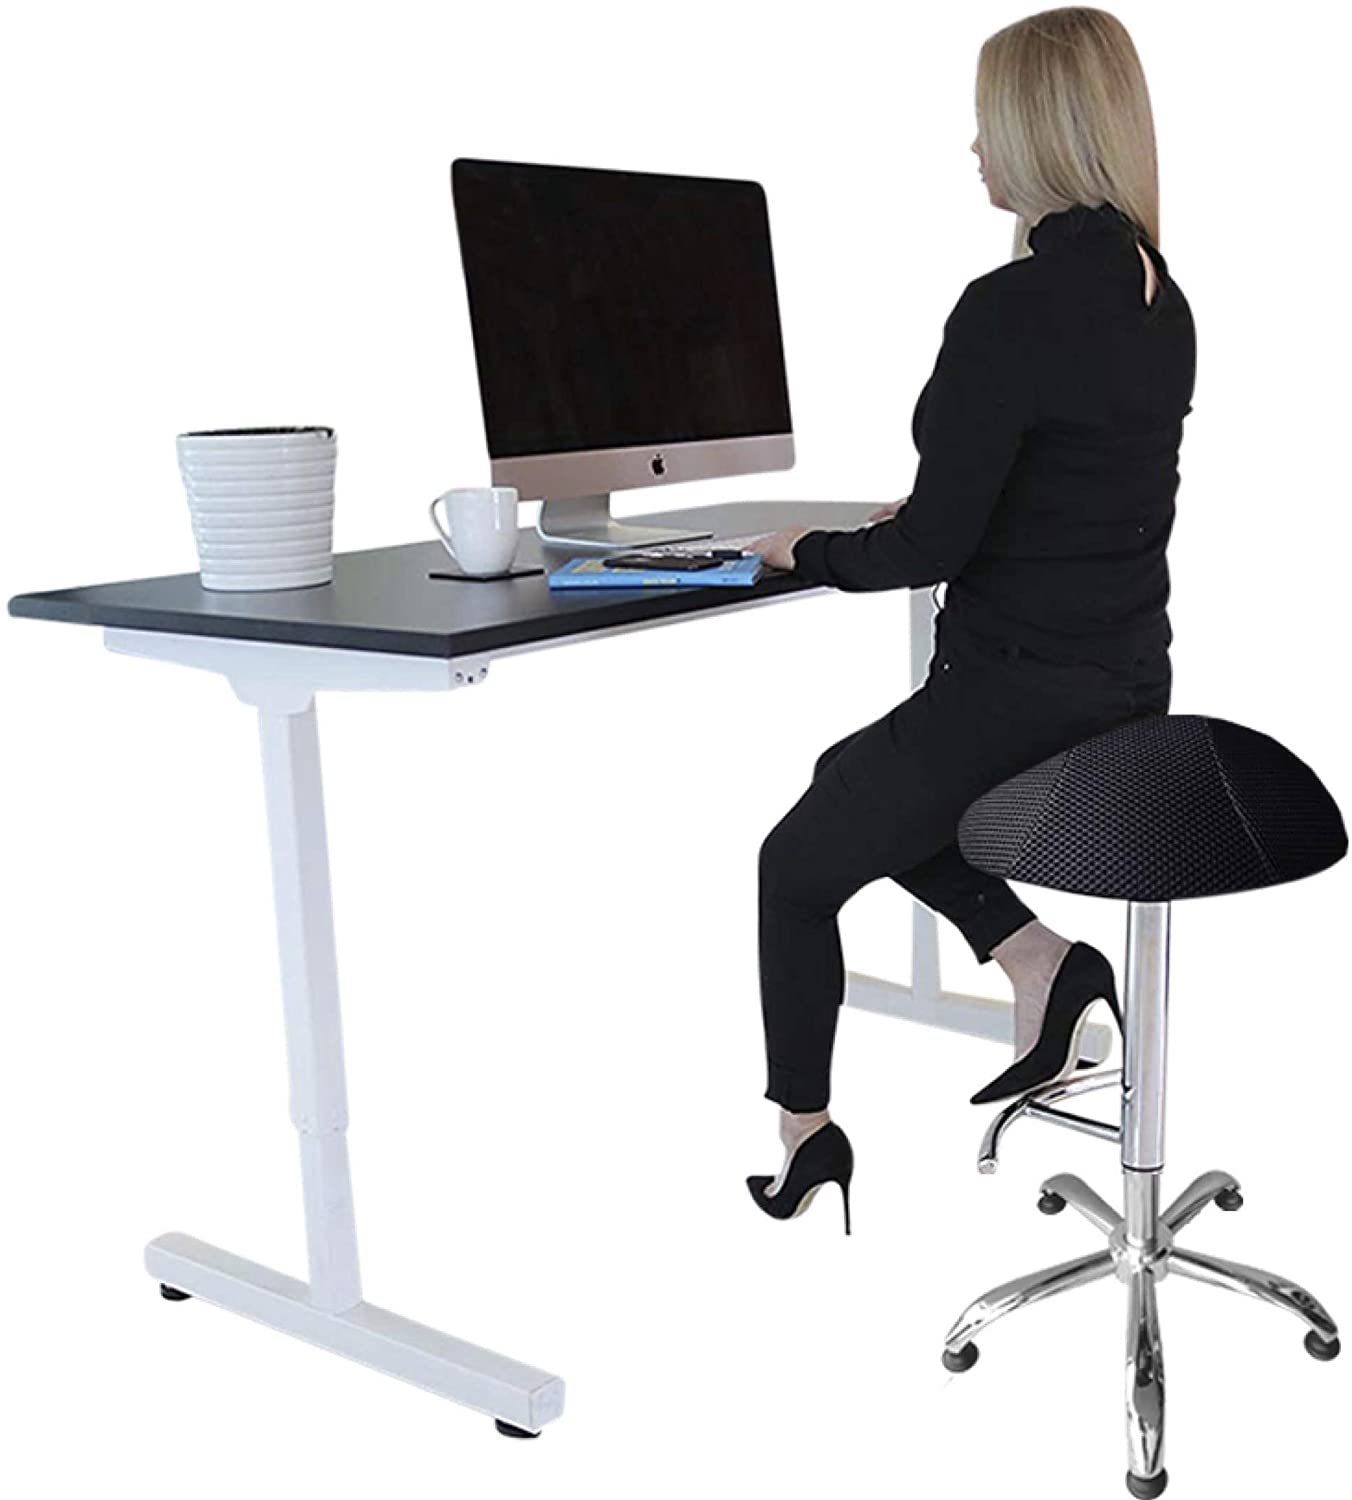 CORESEAT Ergonomic Standing Ball Desk Office Chair